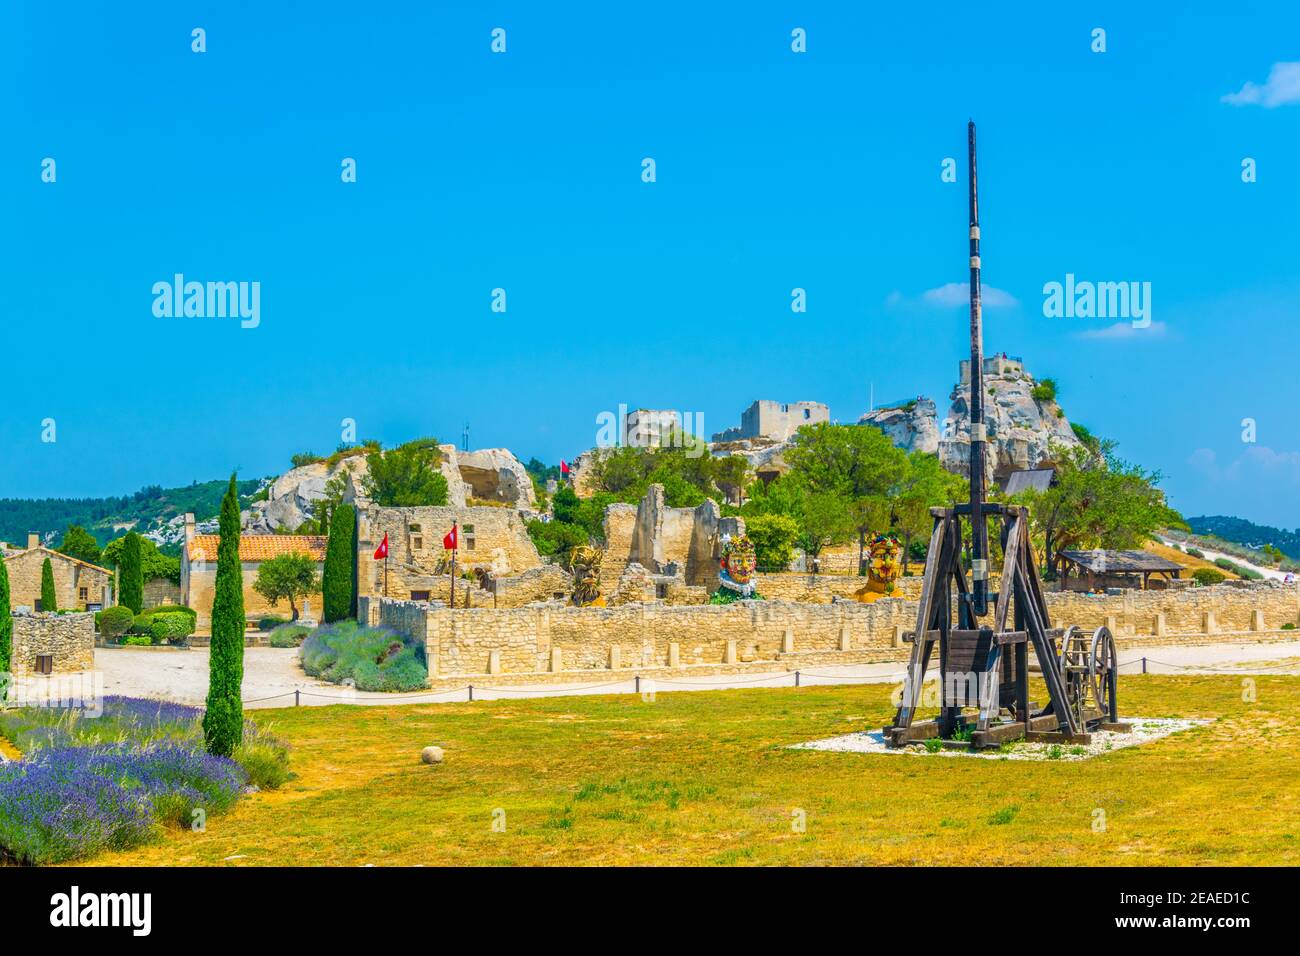 Armi storiche situate all'interno del castello dei Baux arroccato A Les Baux des Provence villaggio in Francia Foto Stock